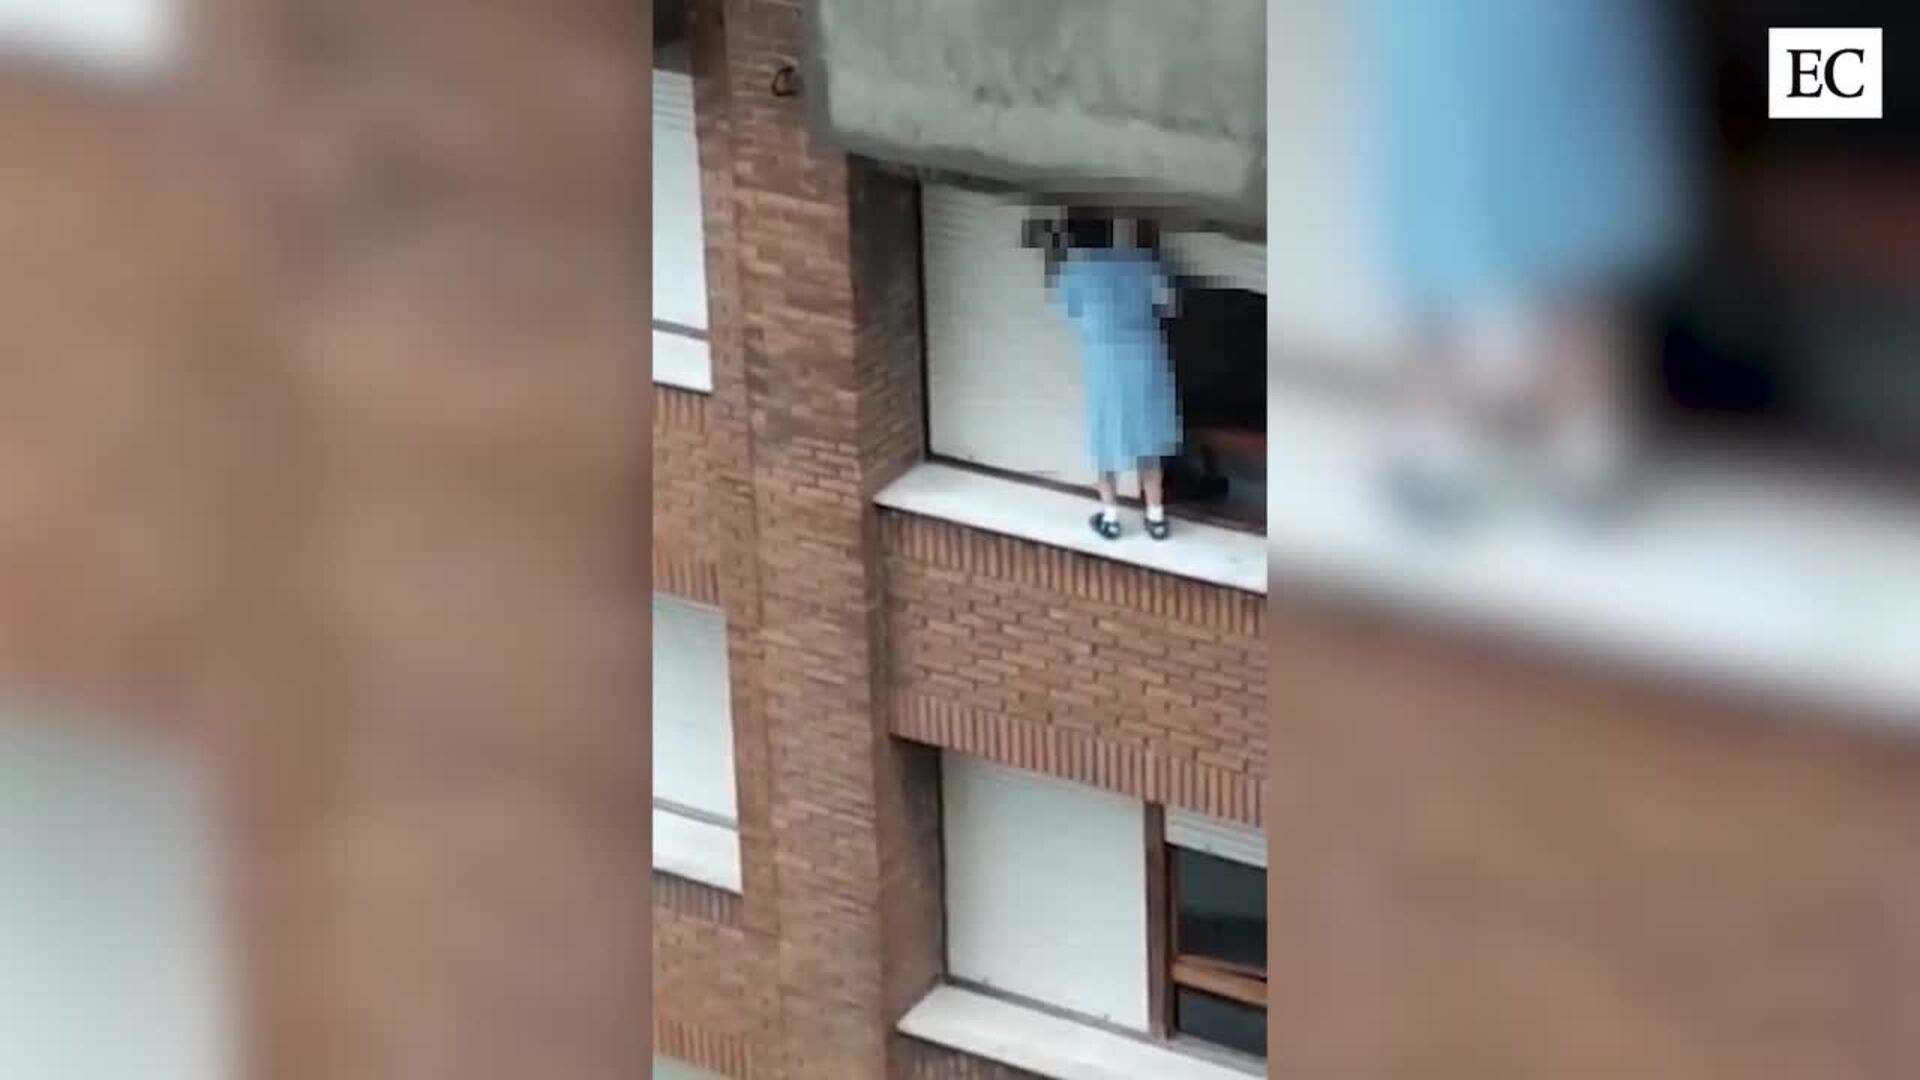 El impactante vídeo de una mujer limpiando la ventana en último piso